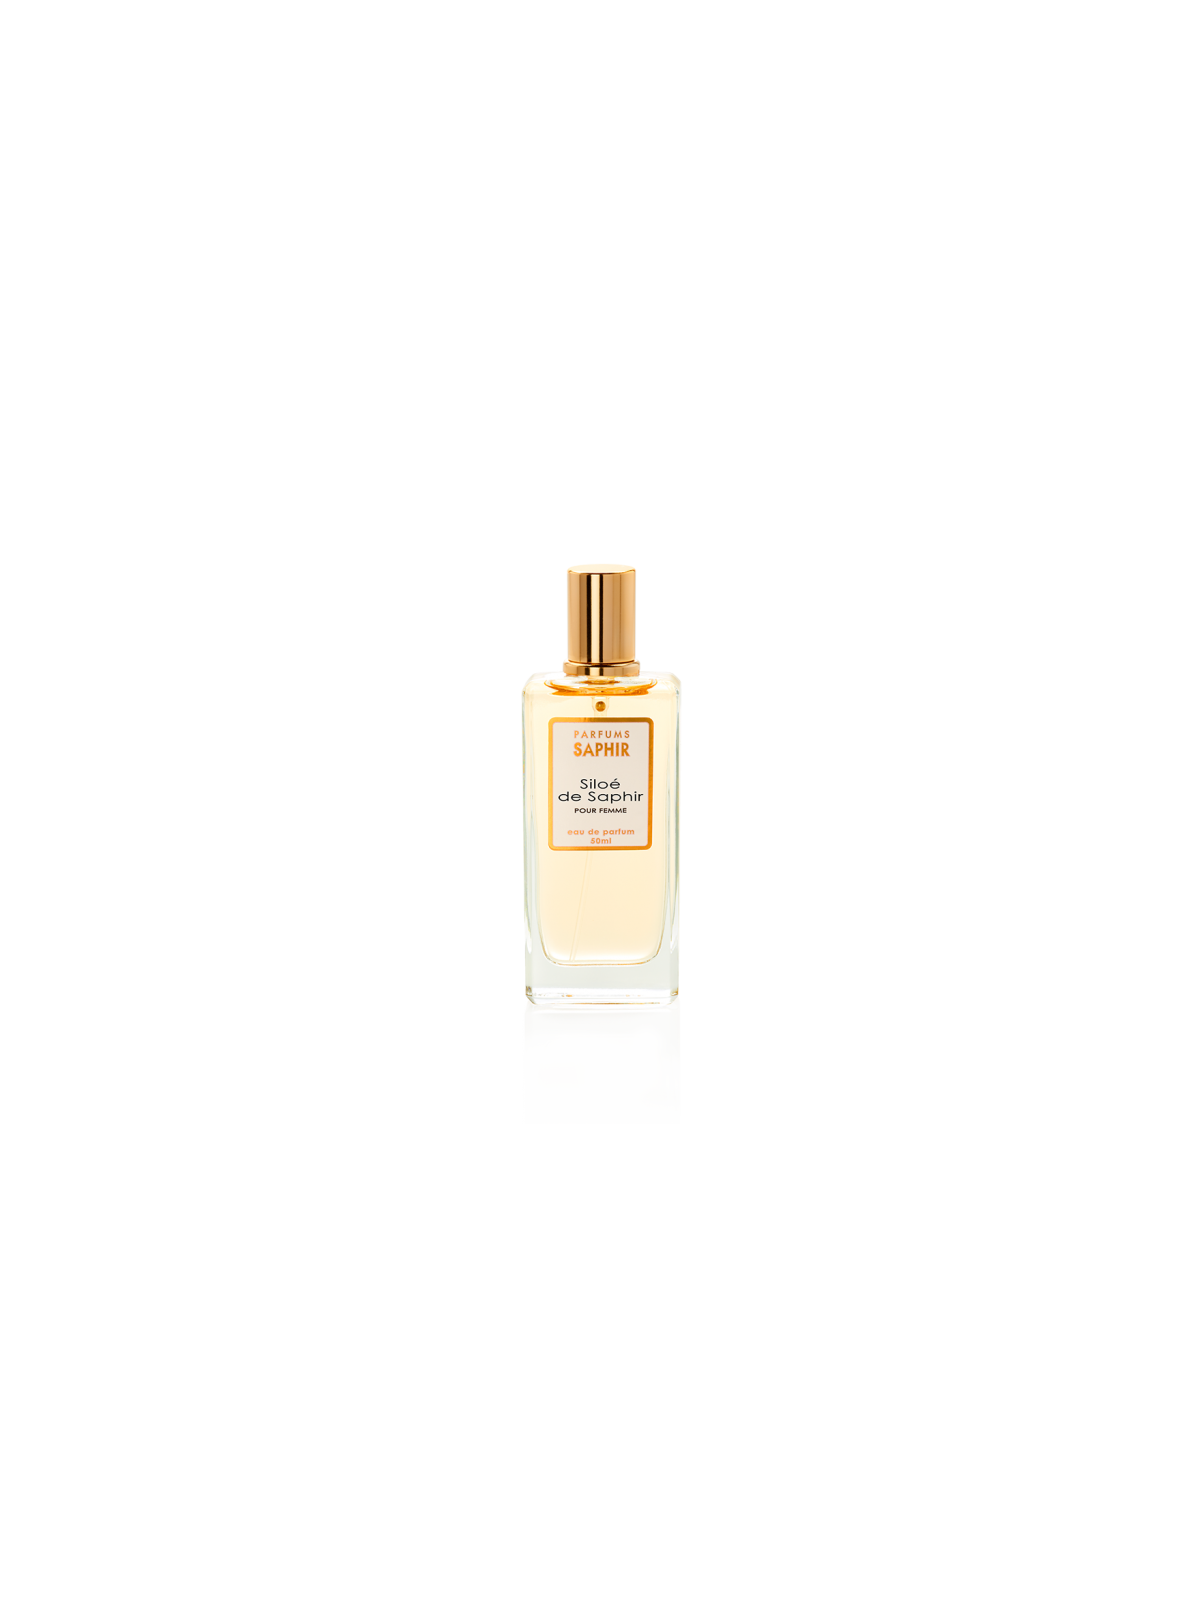 Comprar Perfume SAPHIR Siloé de Saphir 50ml. en Perfumes para mujer por sólo 4,95 € o un precio específico de 4,95 € en Thalie Care